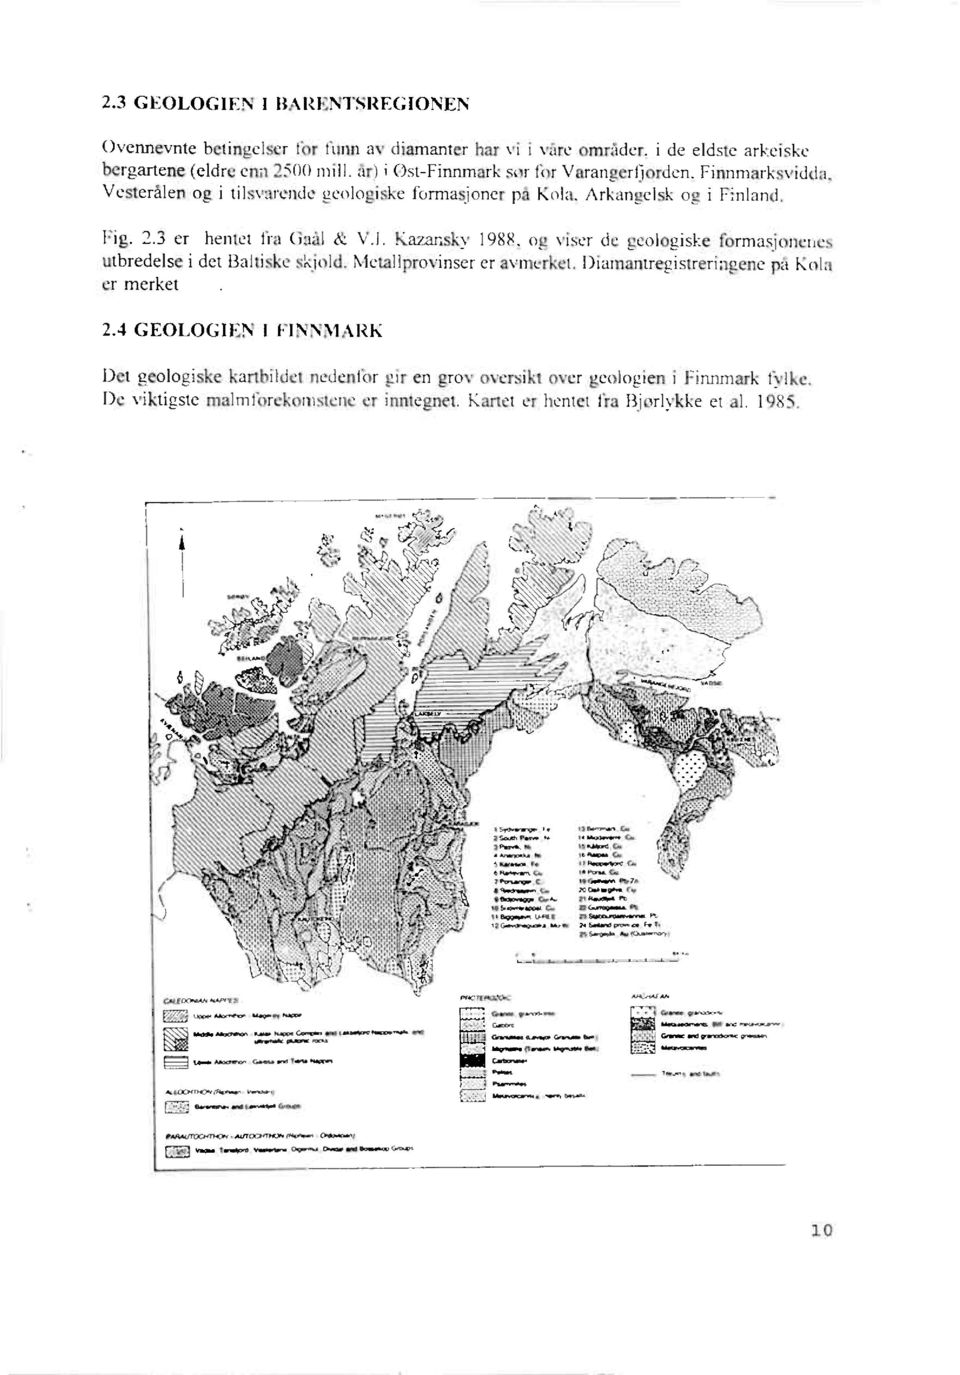 Ka7ansky 1988, og viser de geologiske formasjonenes utbredelse i det Baltiske skjold. Metallprovinser er avmerket. Diamantregistreringene på Kola er merket 2.